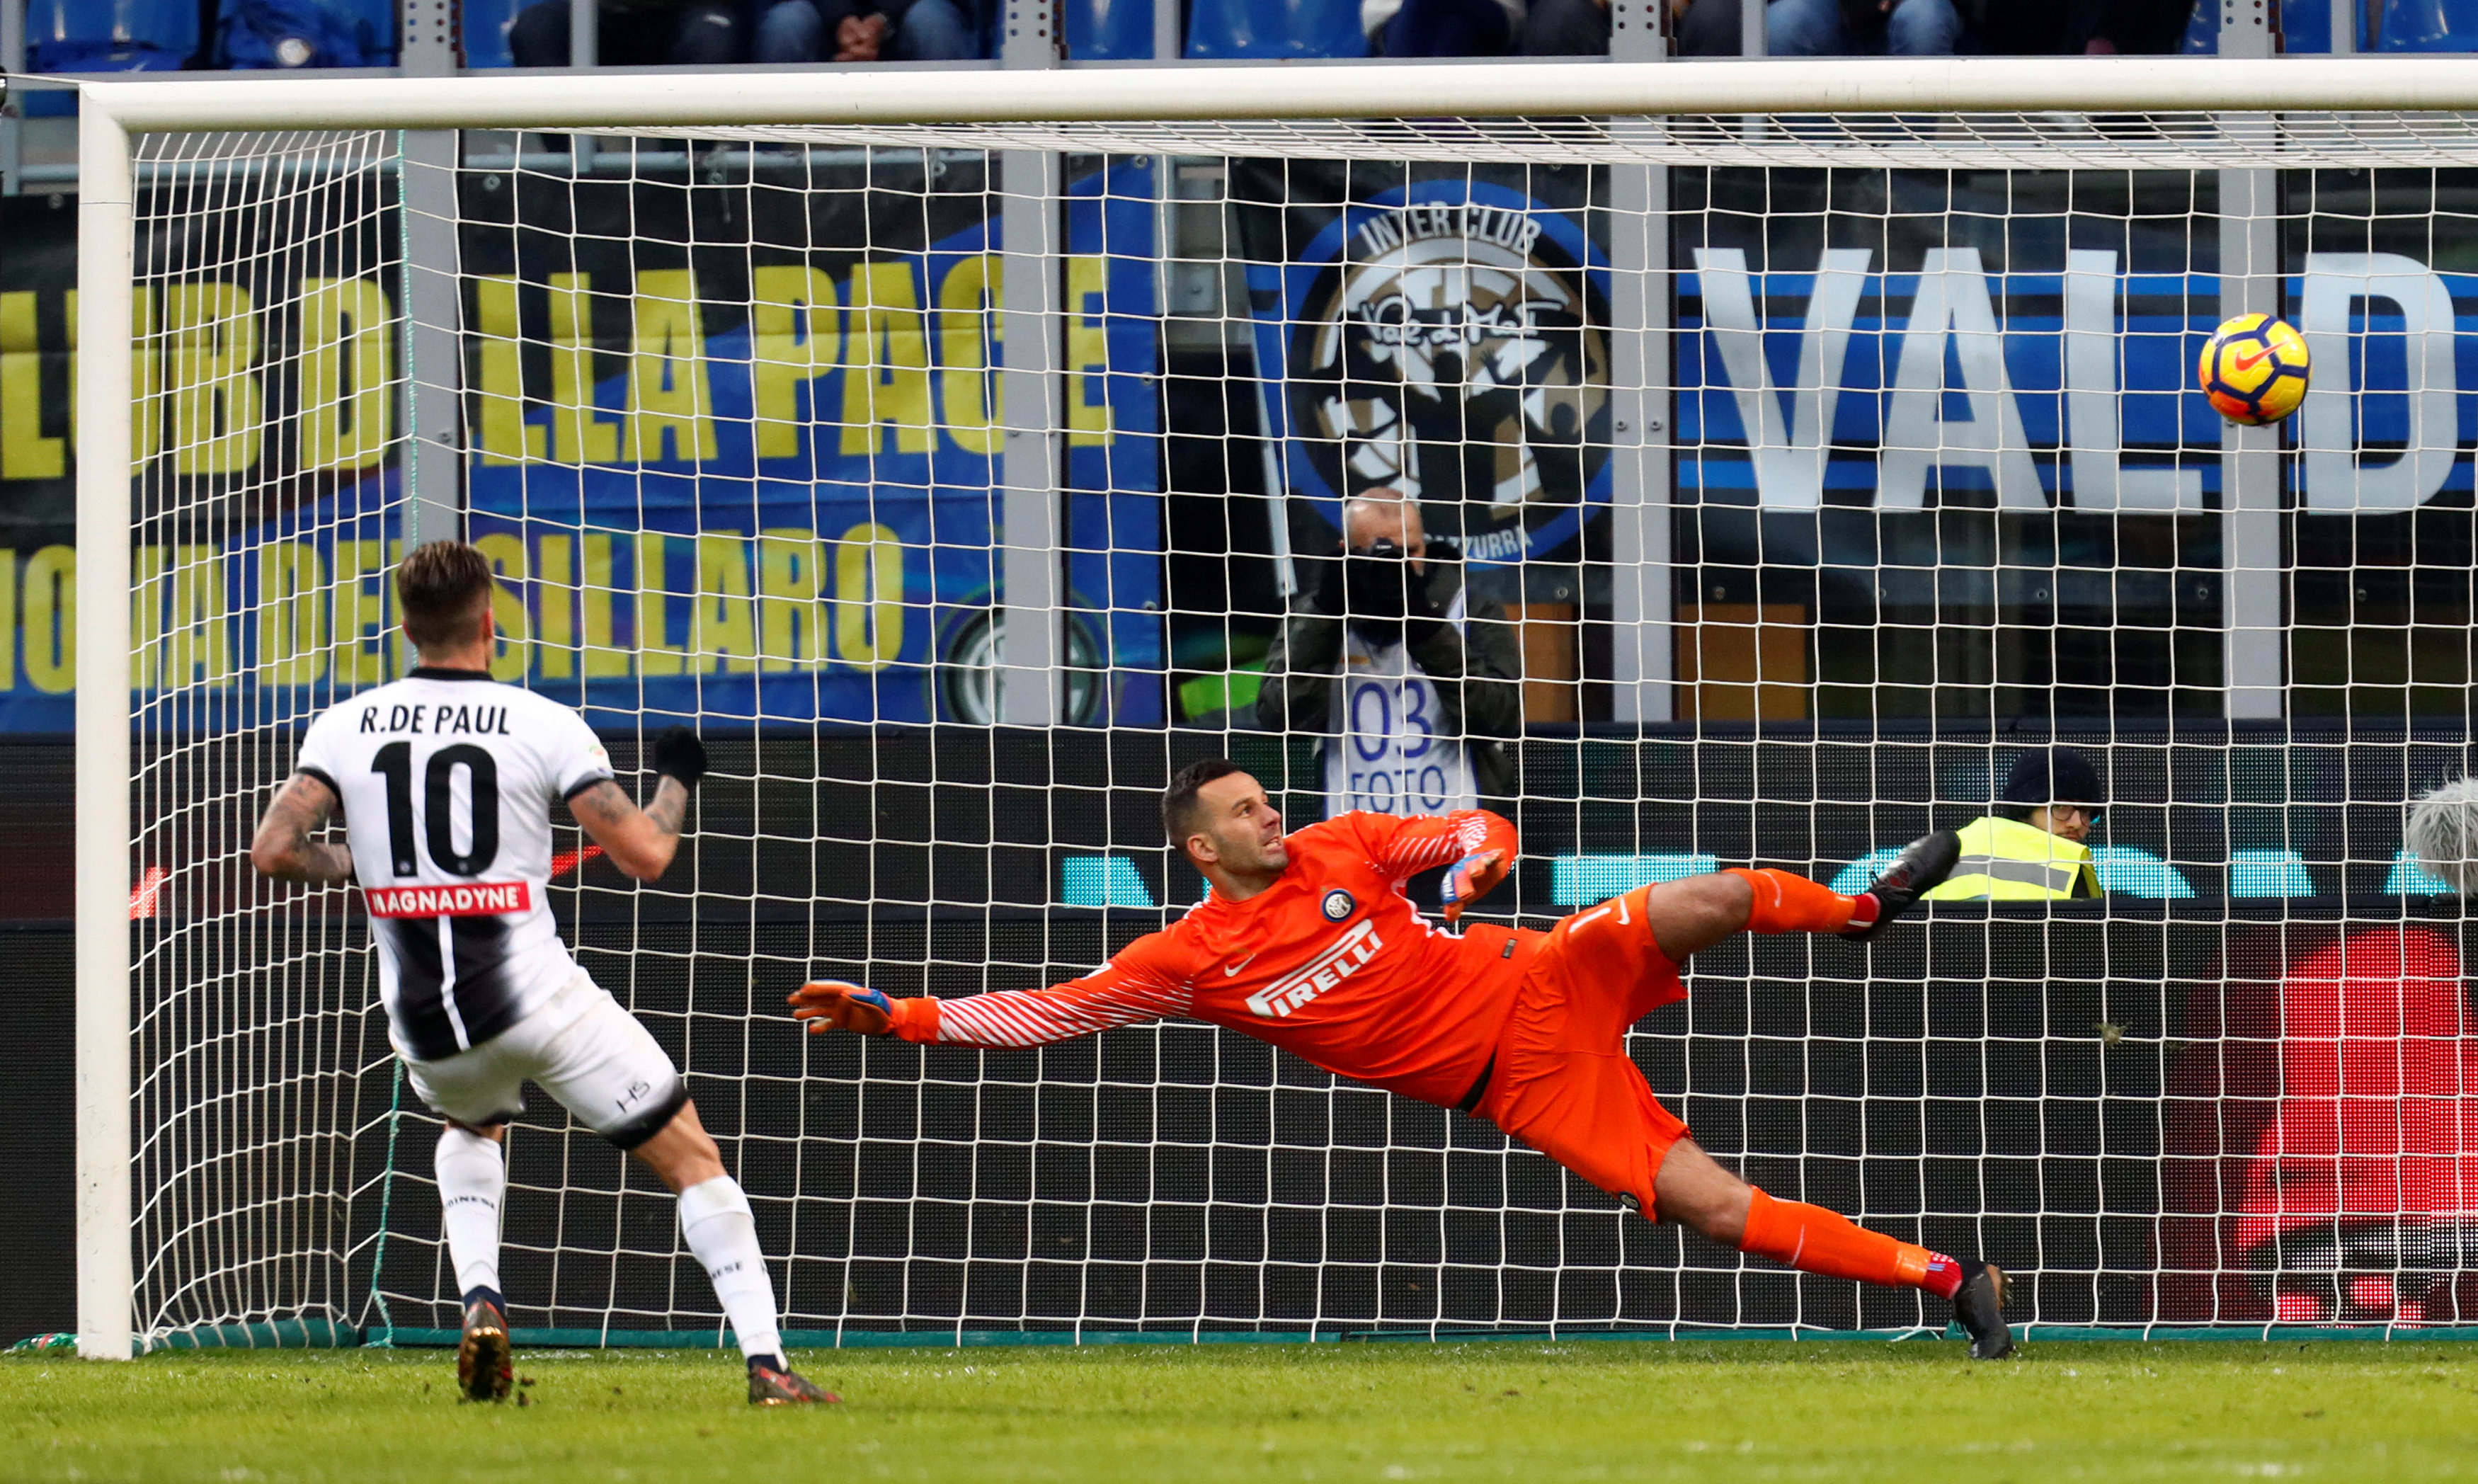 Pha dứt điểm nâng tỉ số lên 2-1 cho Udinese của De Paul. Ảnh: REUTERS